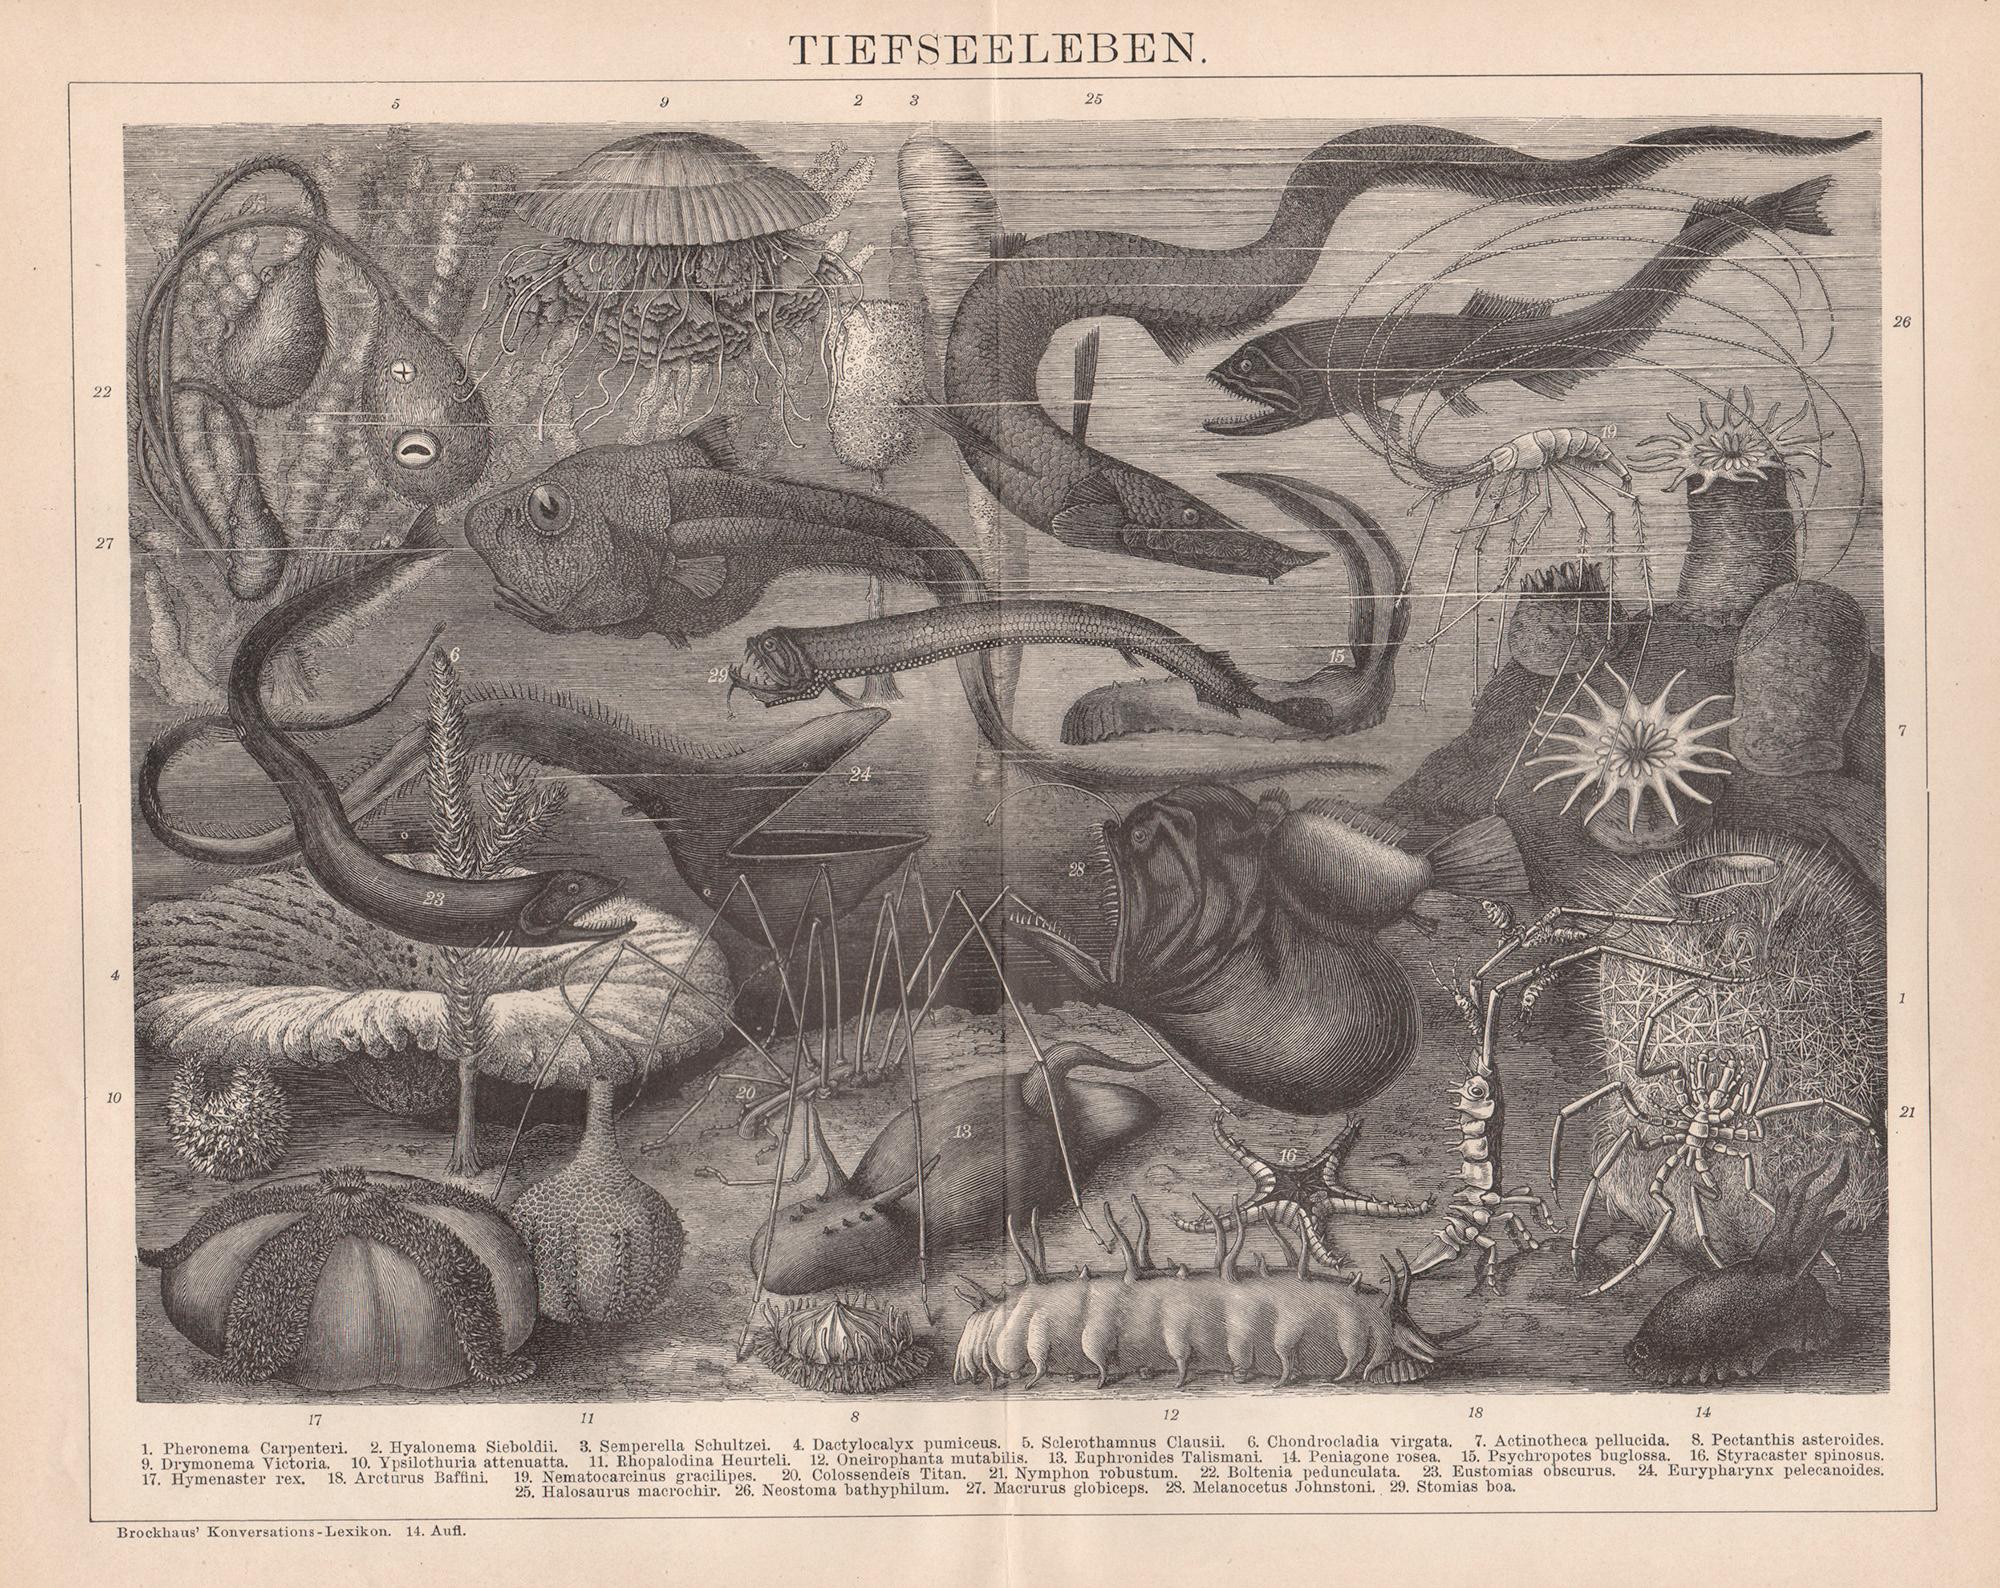 Unknown Print – Tiefseeleben (Zeitgenössisches Meeresleben), deutsches antikes Gravieren des Unterwassers und Meereslebens